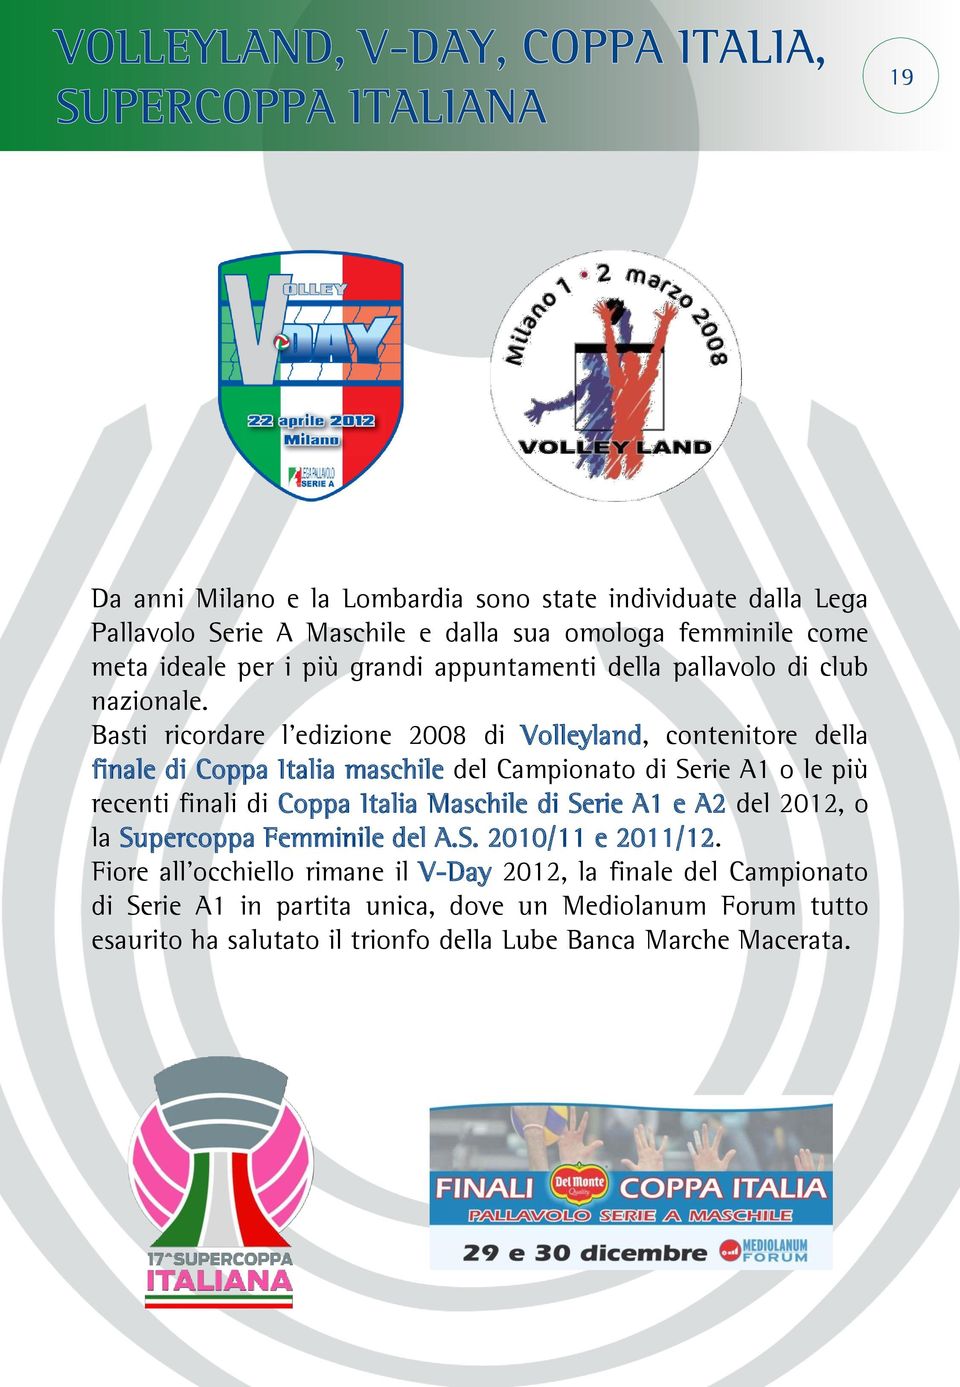 Basti ricordare l edizione 2008 di Volleyland, contenitore della finale di Coppa Italia maschile del Campionato di Serie A1 o le più recenti finali di Coppa Italia